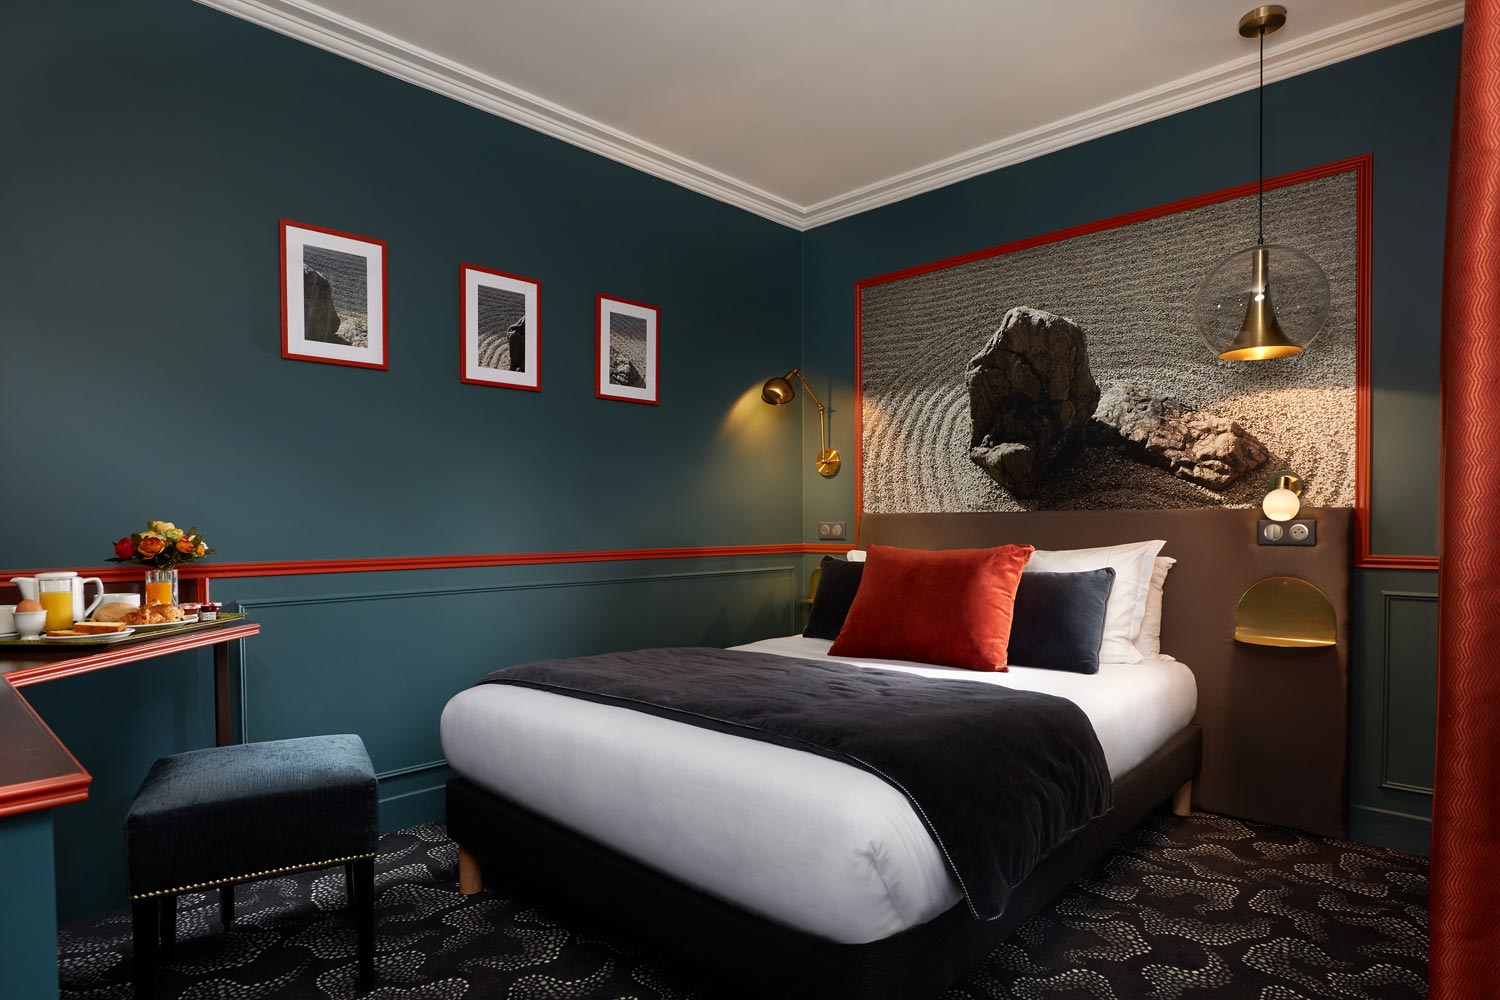 Chambre Double Hotel3 étoiles Montparnasse Daguerre | Hotel paris 3*